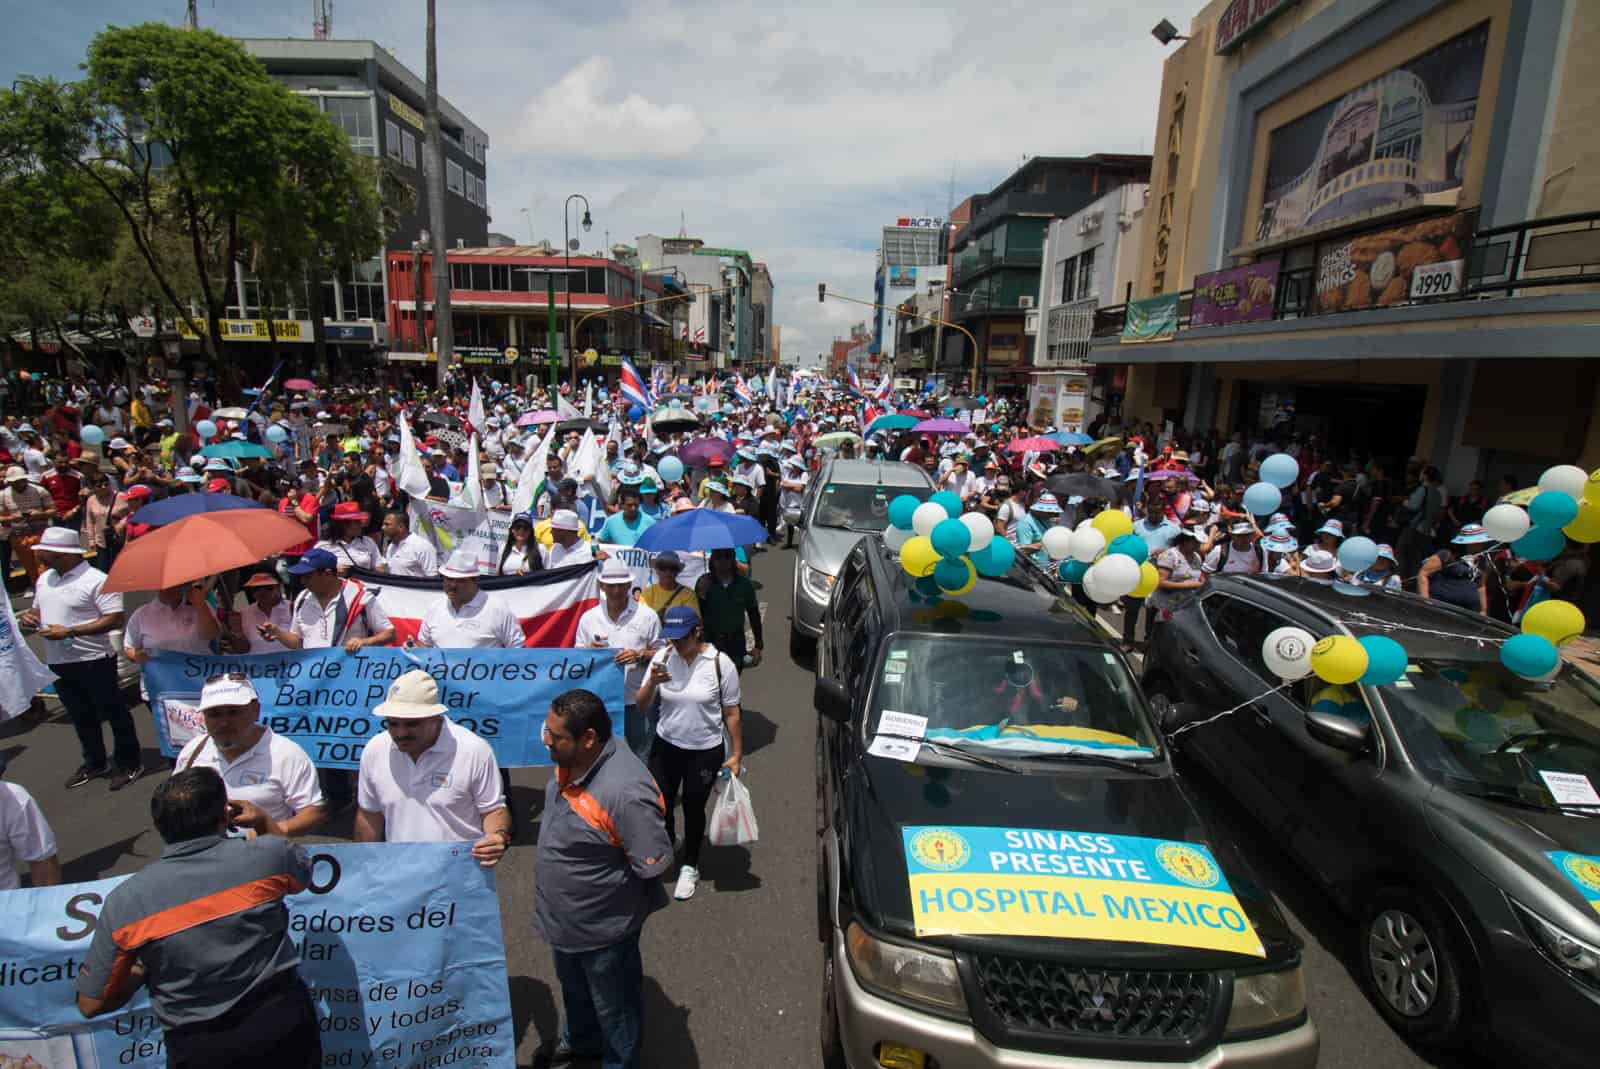 2018 Public Sector Strike in Costa Rica